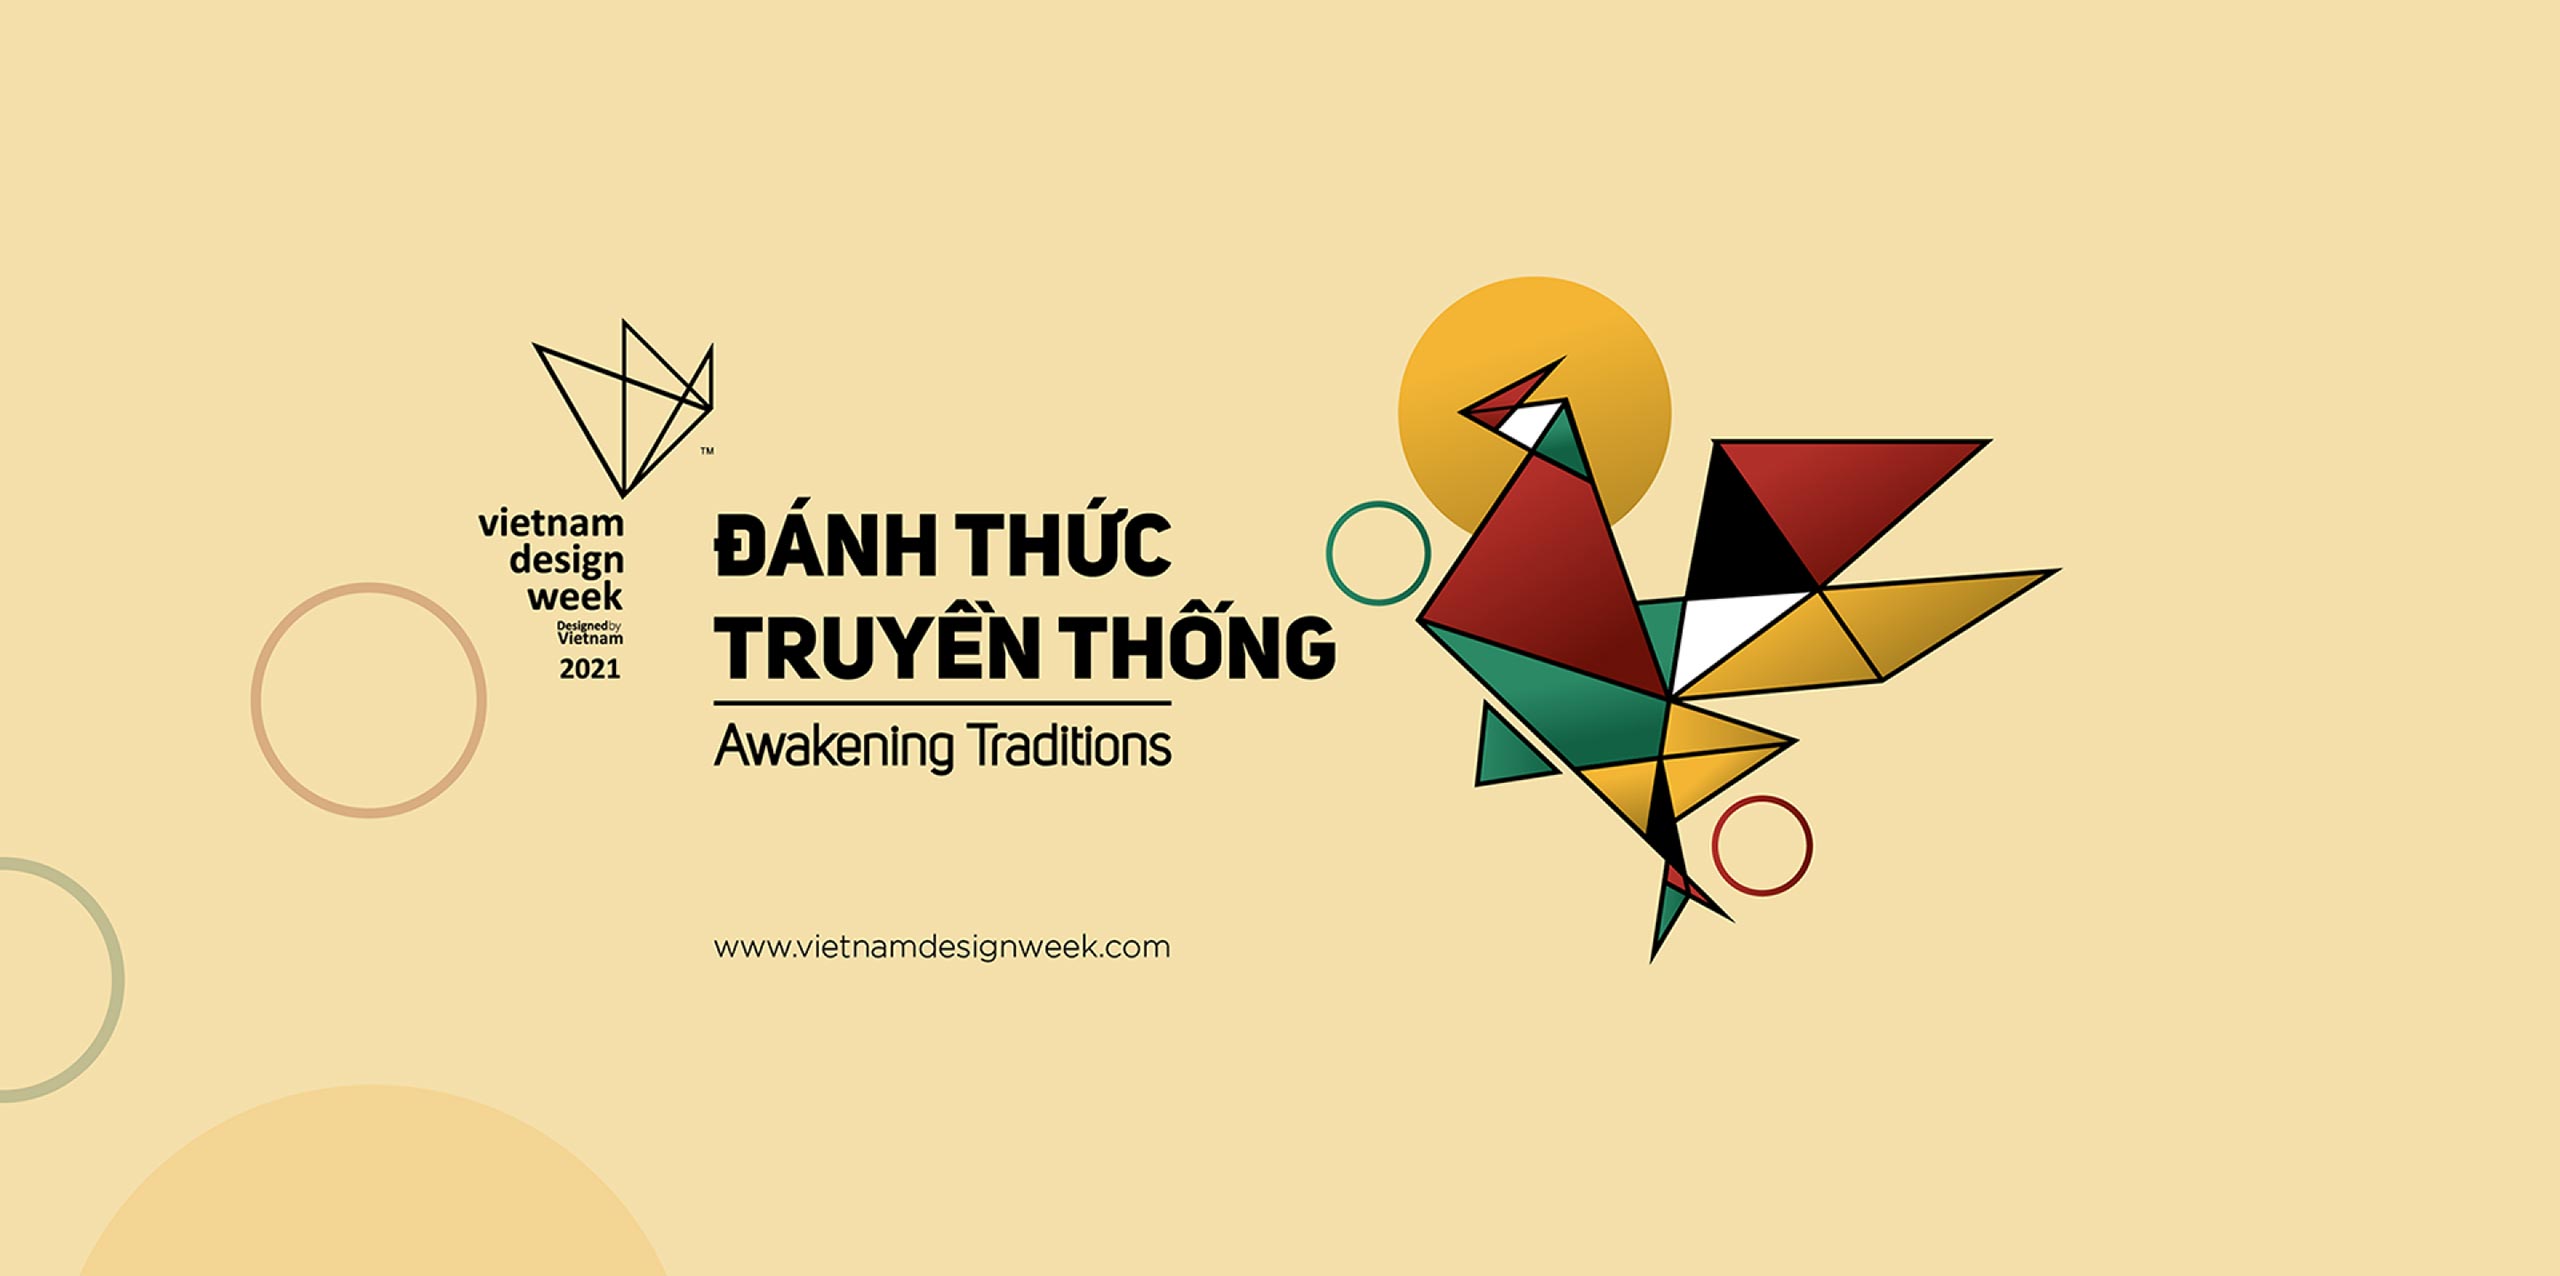 Chính thức khởi động cuộc thi Designed by Vietnam 2021 với chủ đề chủ đề “Đánh thức Truyền thống”. (Nguồn ảnh: vietnamdesignweek.com)